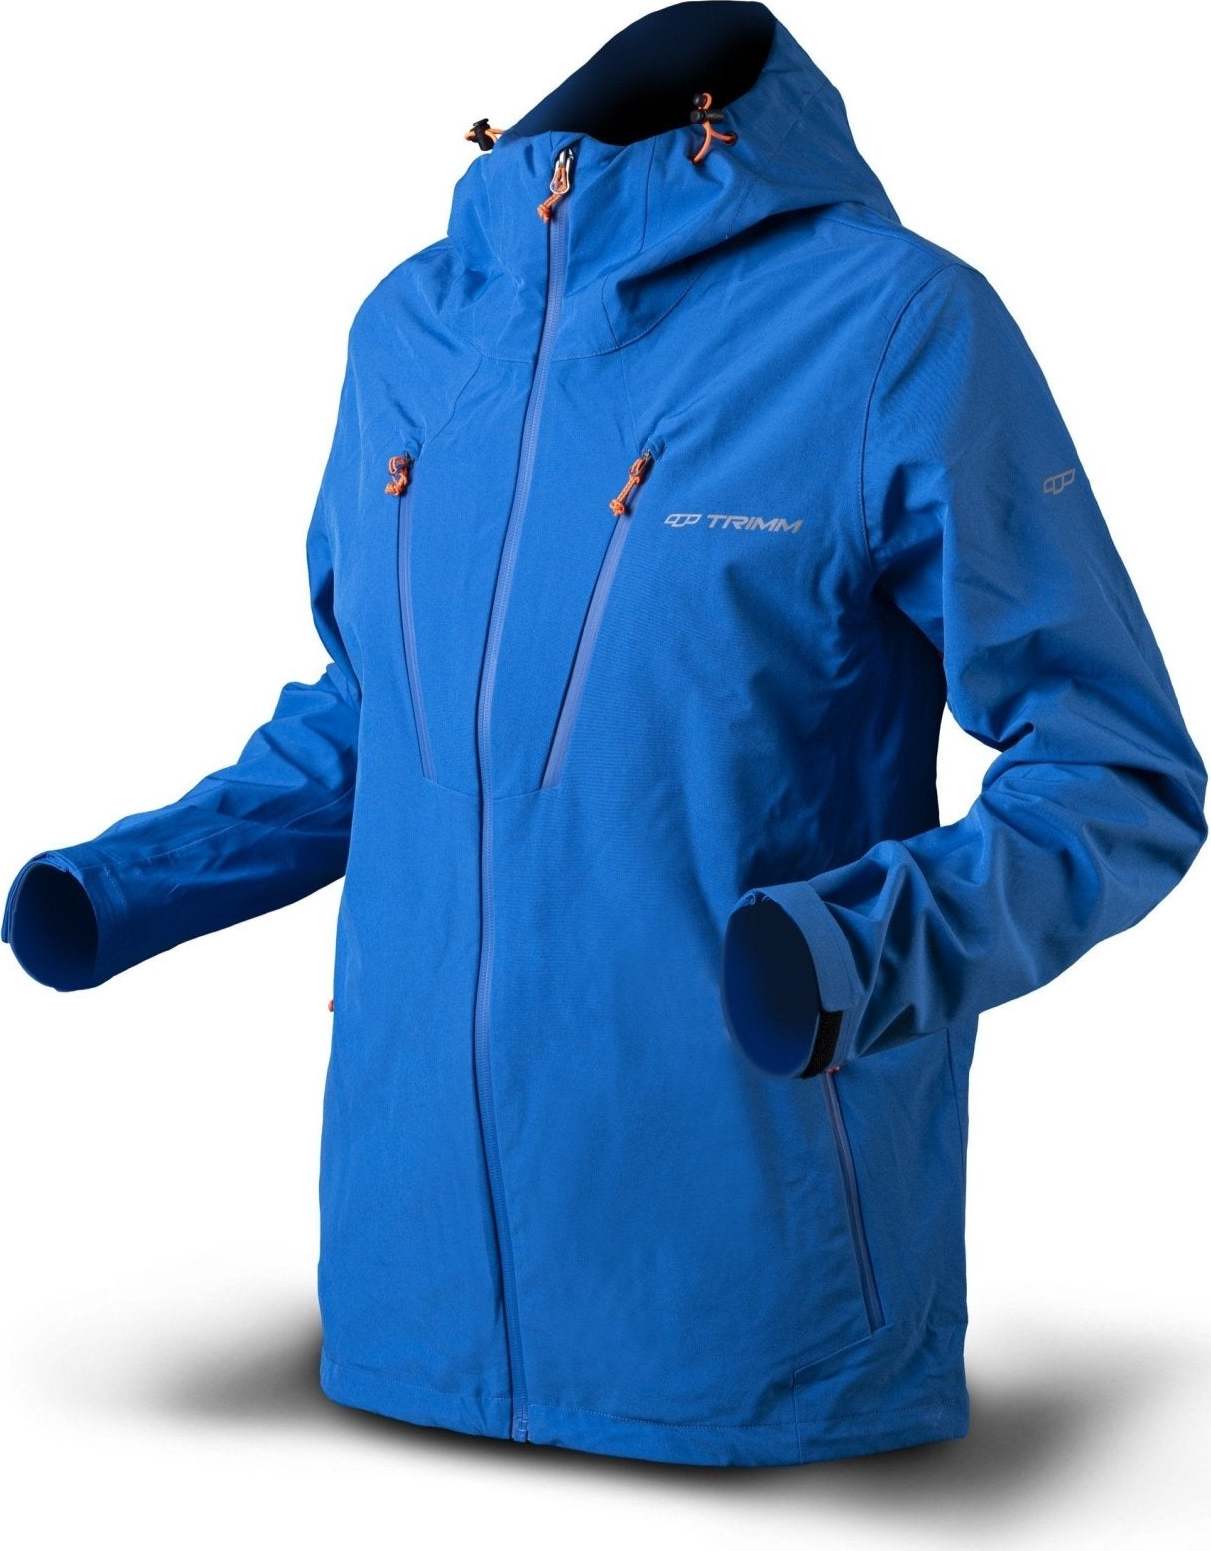 Pánská nepromokavá bunda TRIMM Intense světle modrá Velikost: S, Barva: jeans blue/ orange